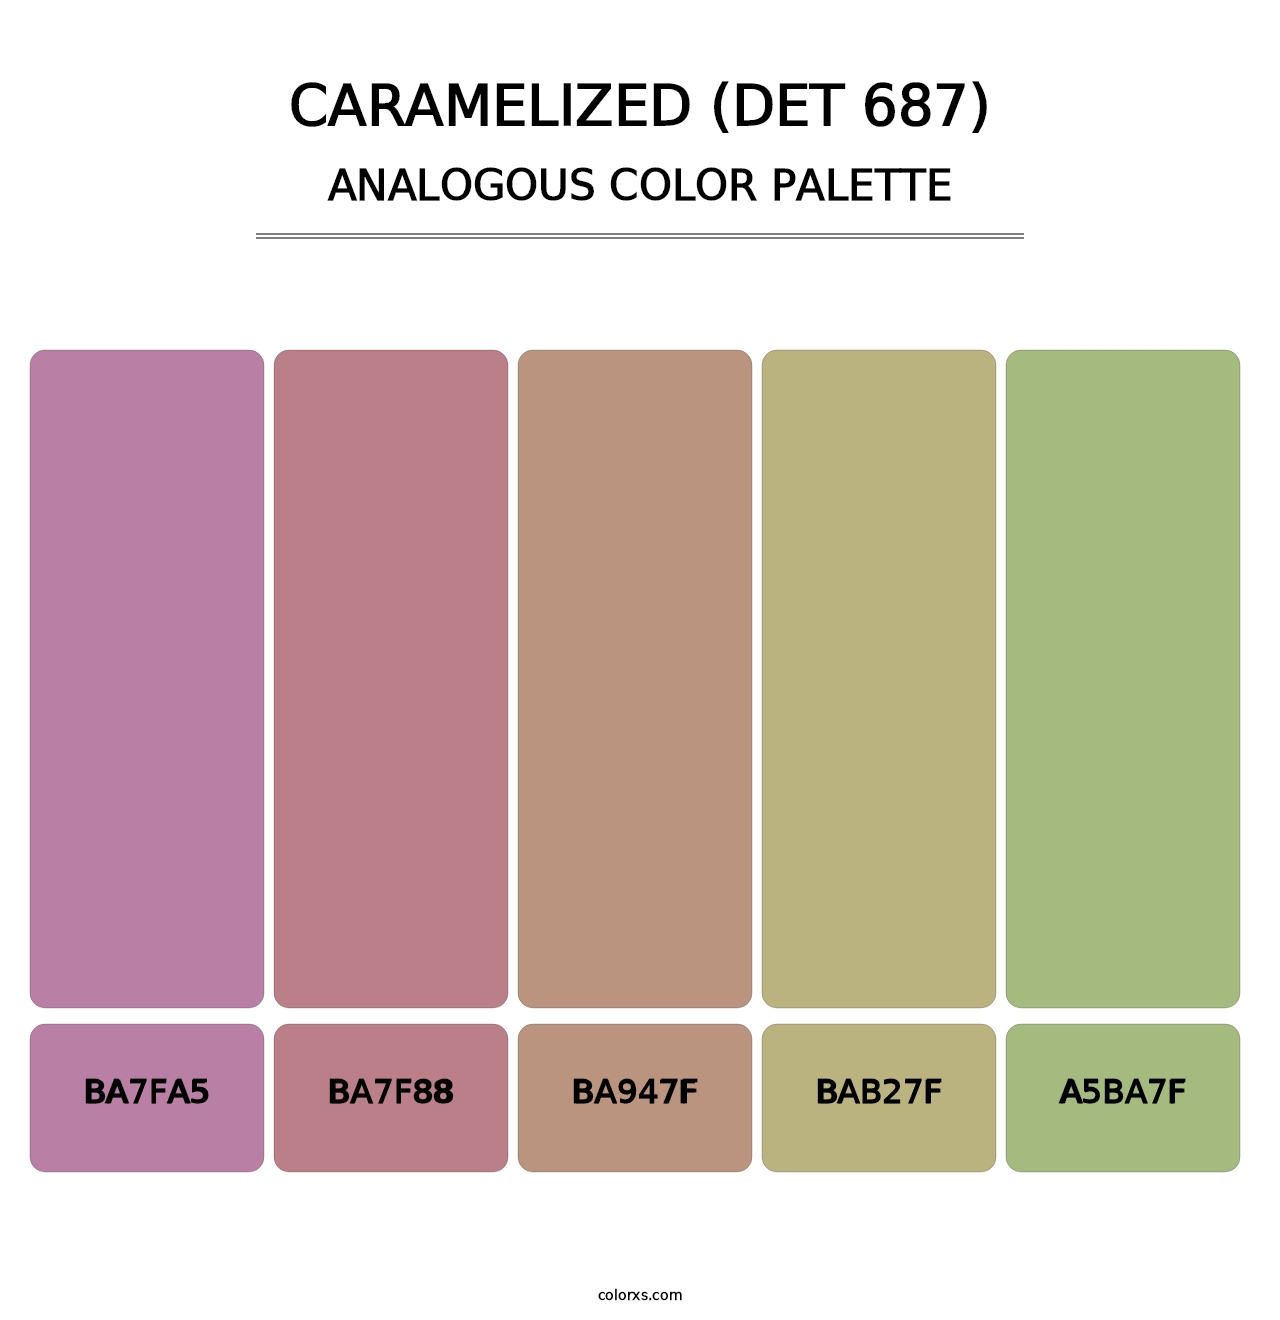 Caramelized (DET 687) - Analogous Color Palette